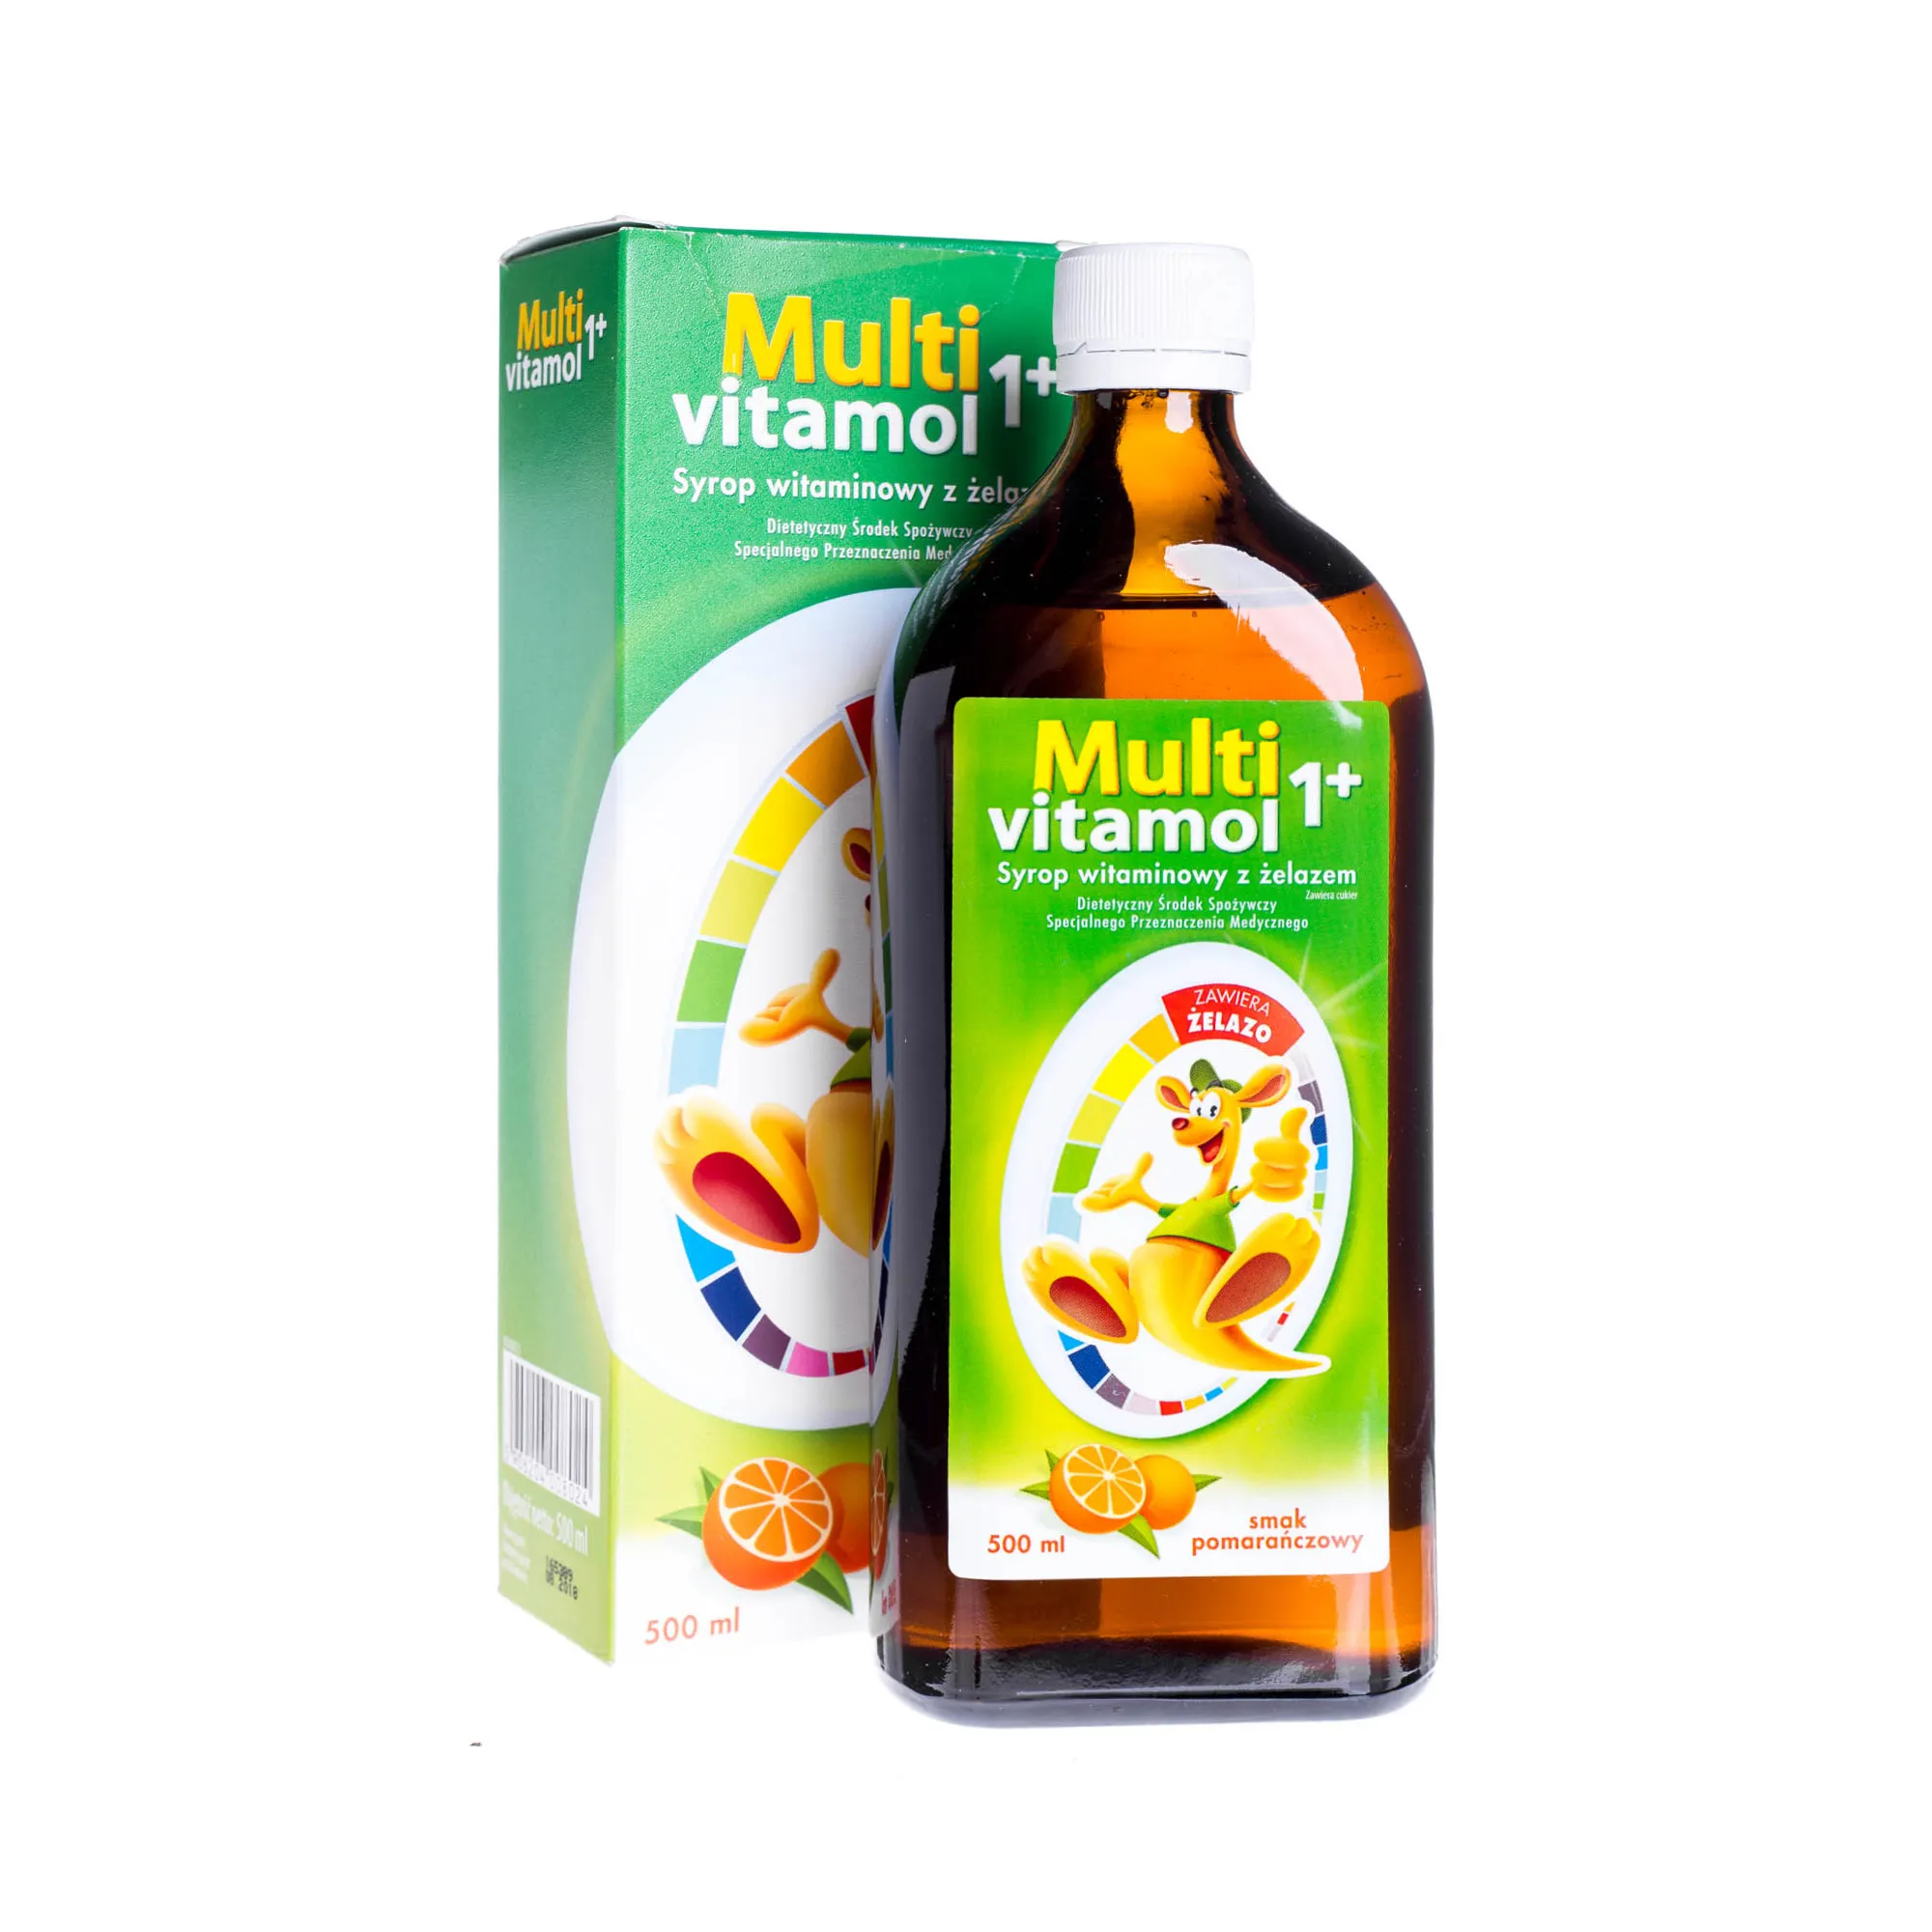 Multivitamol 1+ Syrop witaminowy z żelazem, suplement diety, smak pomarańczowy, 500 ml